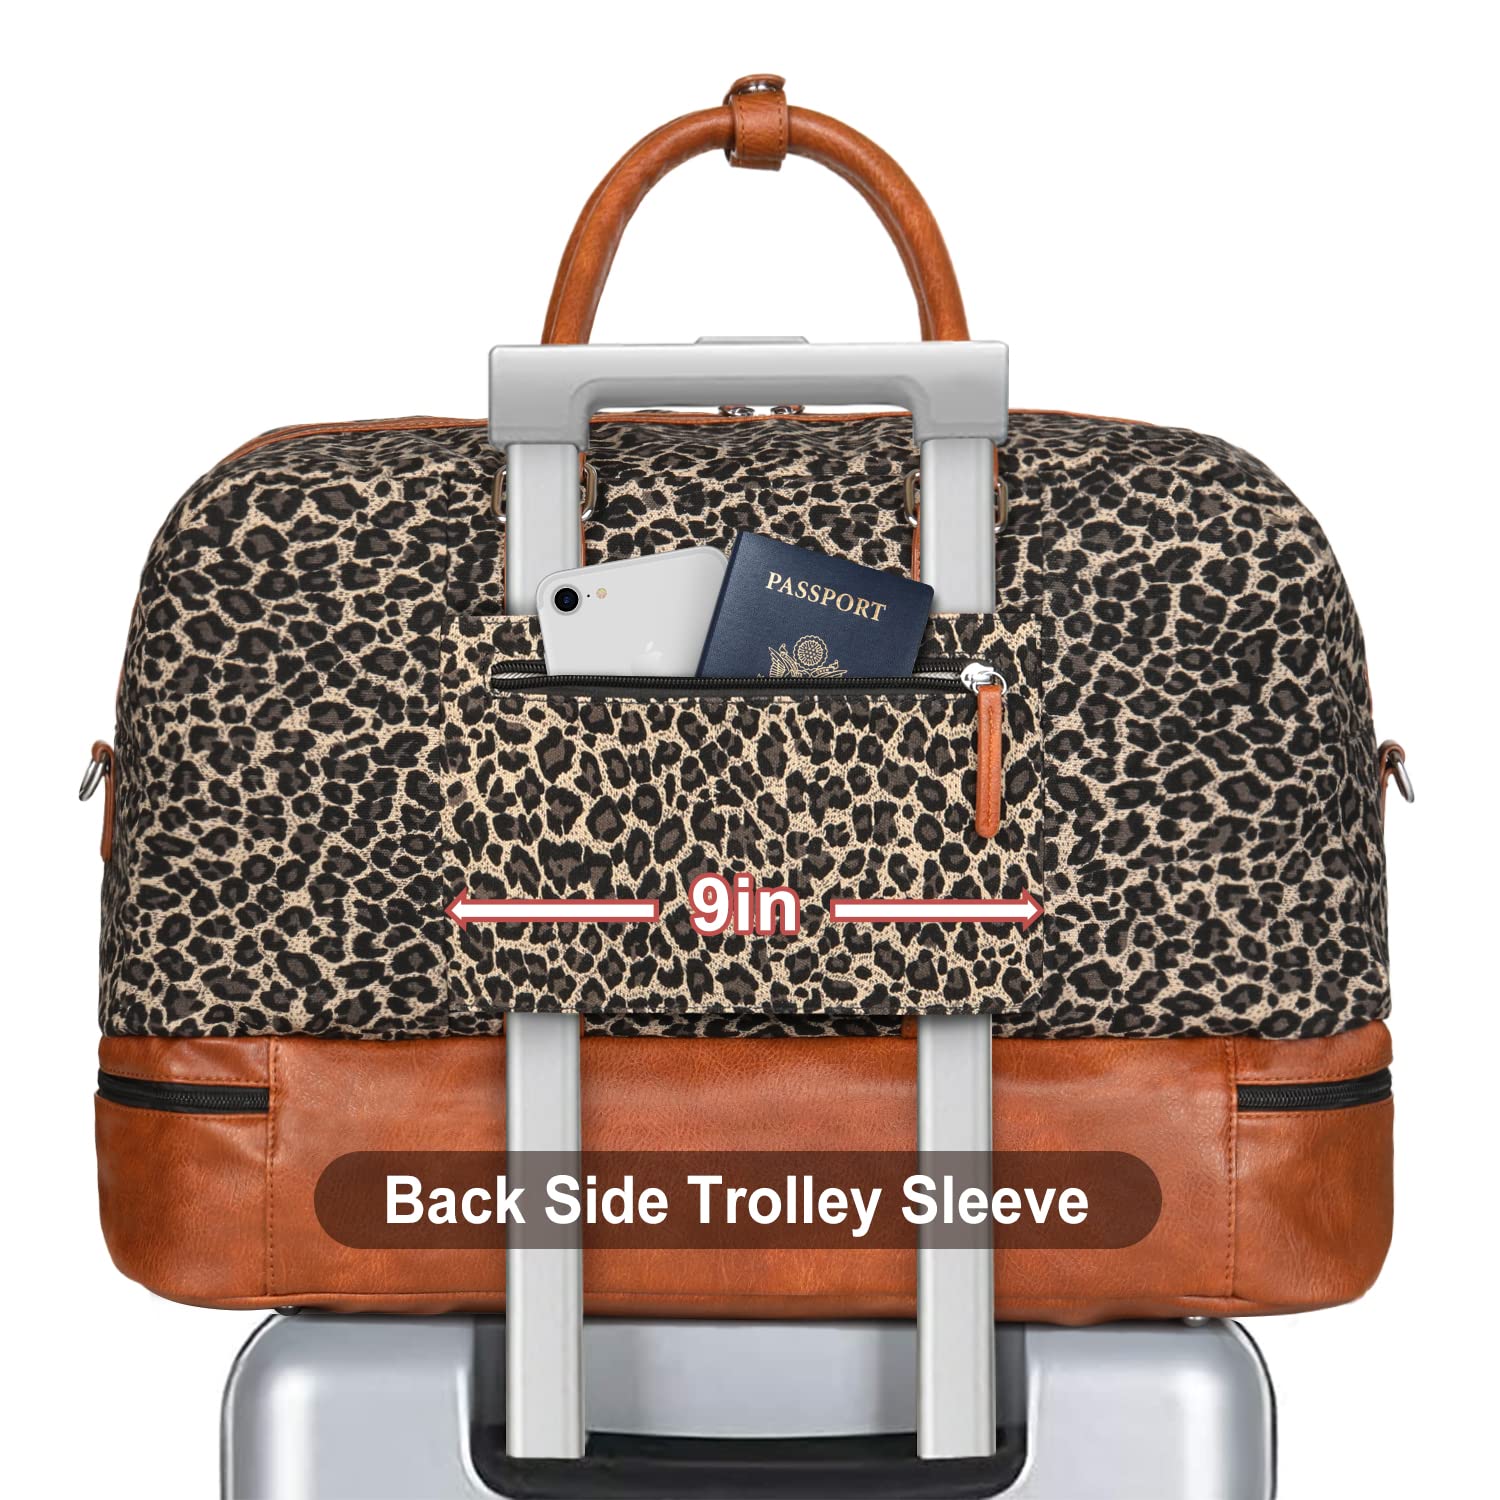 2020 Brand En And Women Large Capacity Luggage Bag Baggage Real Waterproof  Handbag Duffel Bags M4361895 From Yinwei72020, $142.14